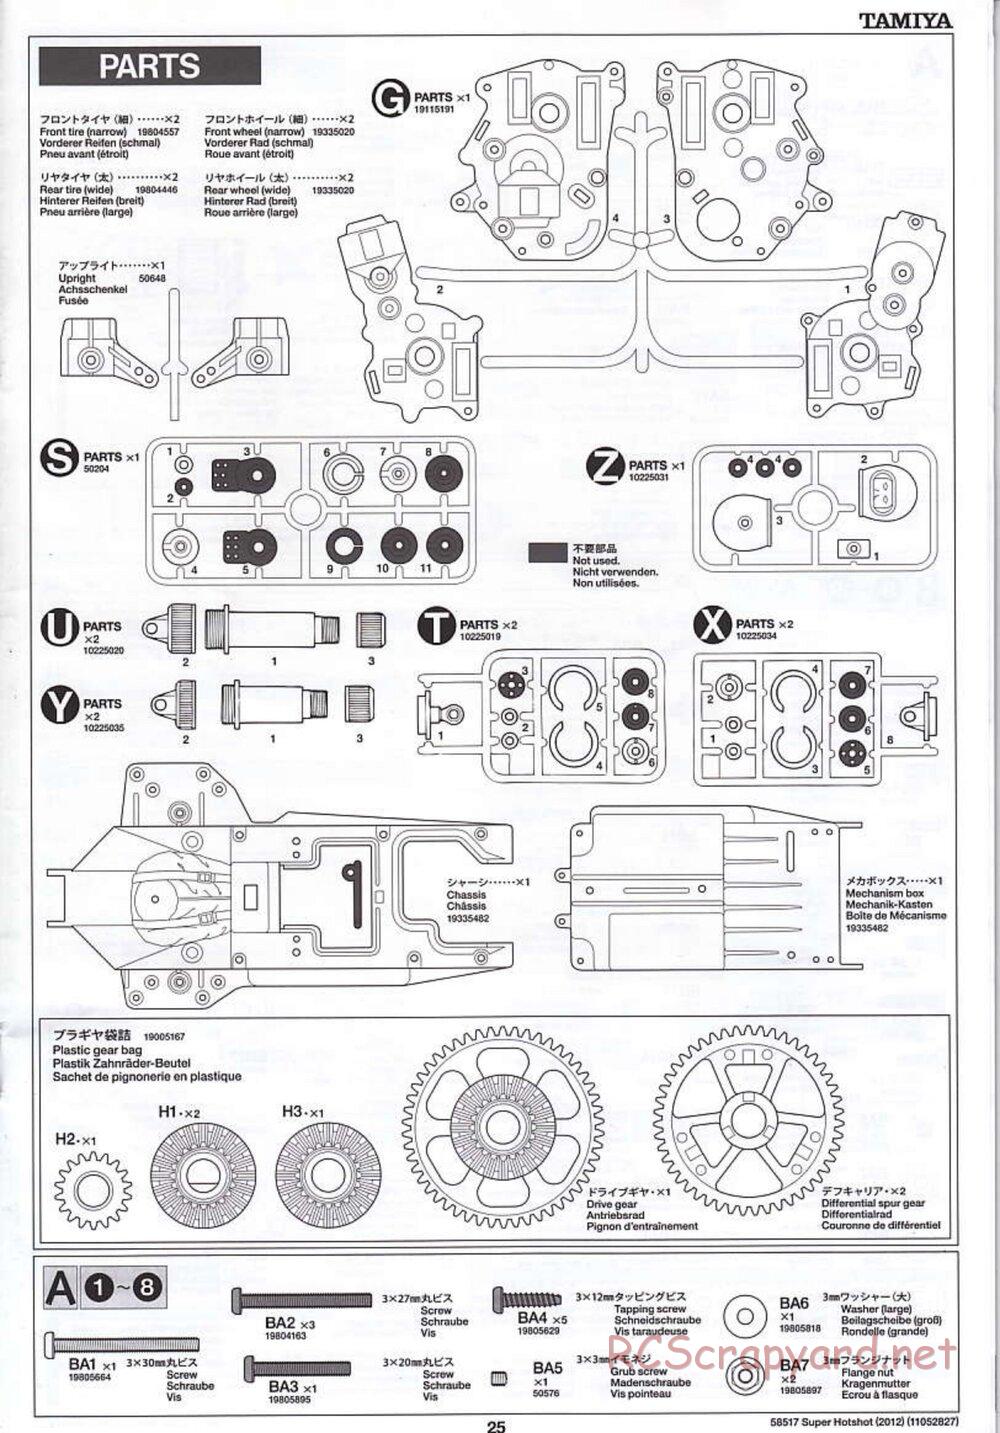 Tamiya - Super Hotshot 2012 - HS Chassis - Manual - Page 25